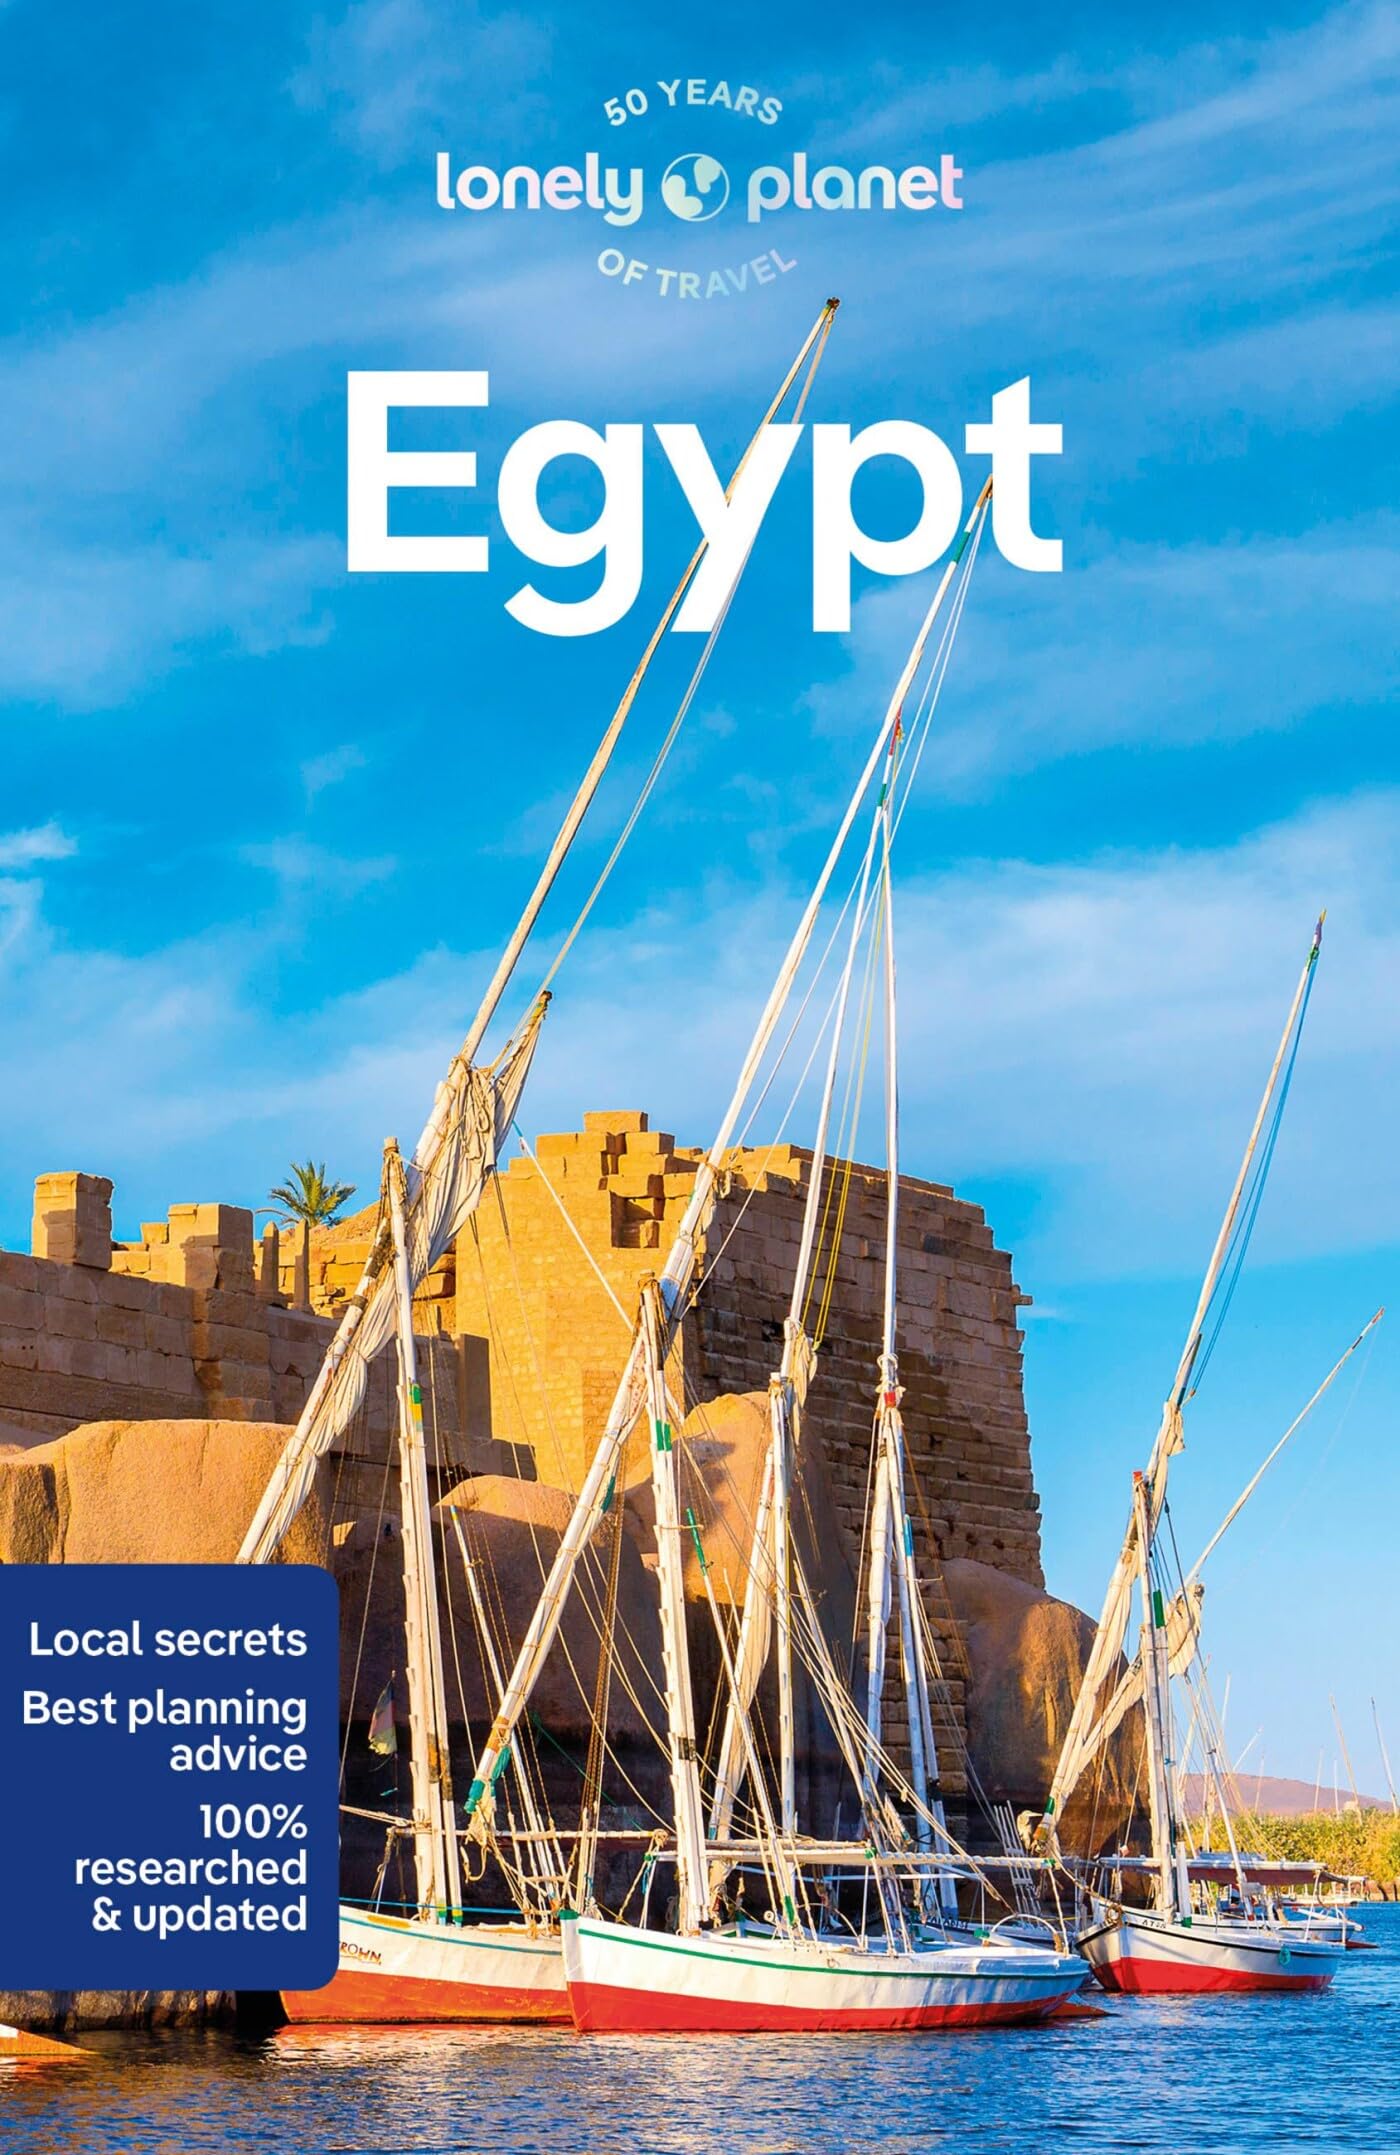 מדריך מצרים לונלי פלנט 15